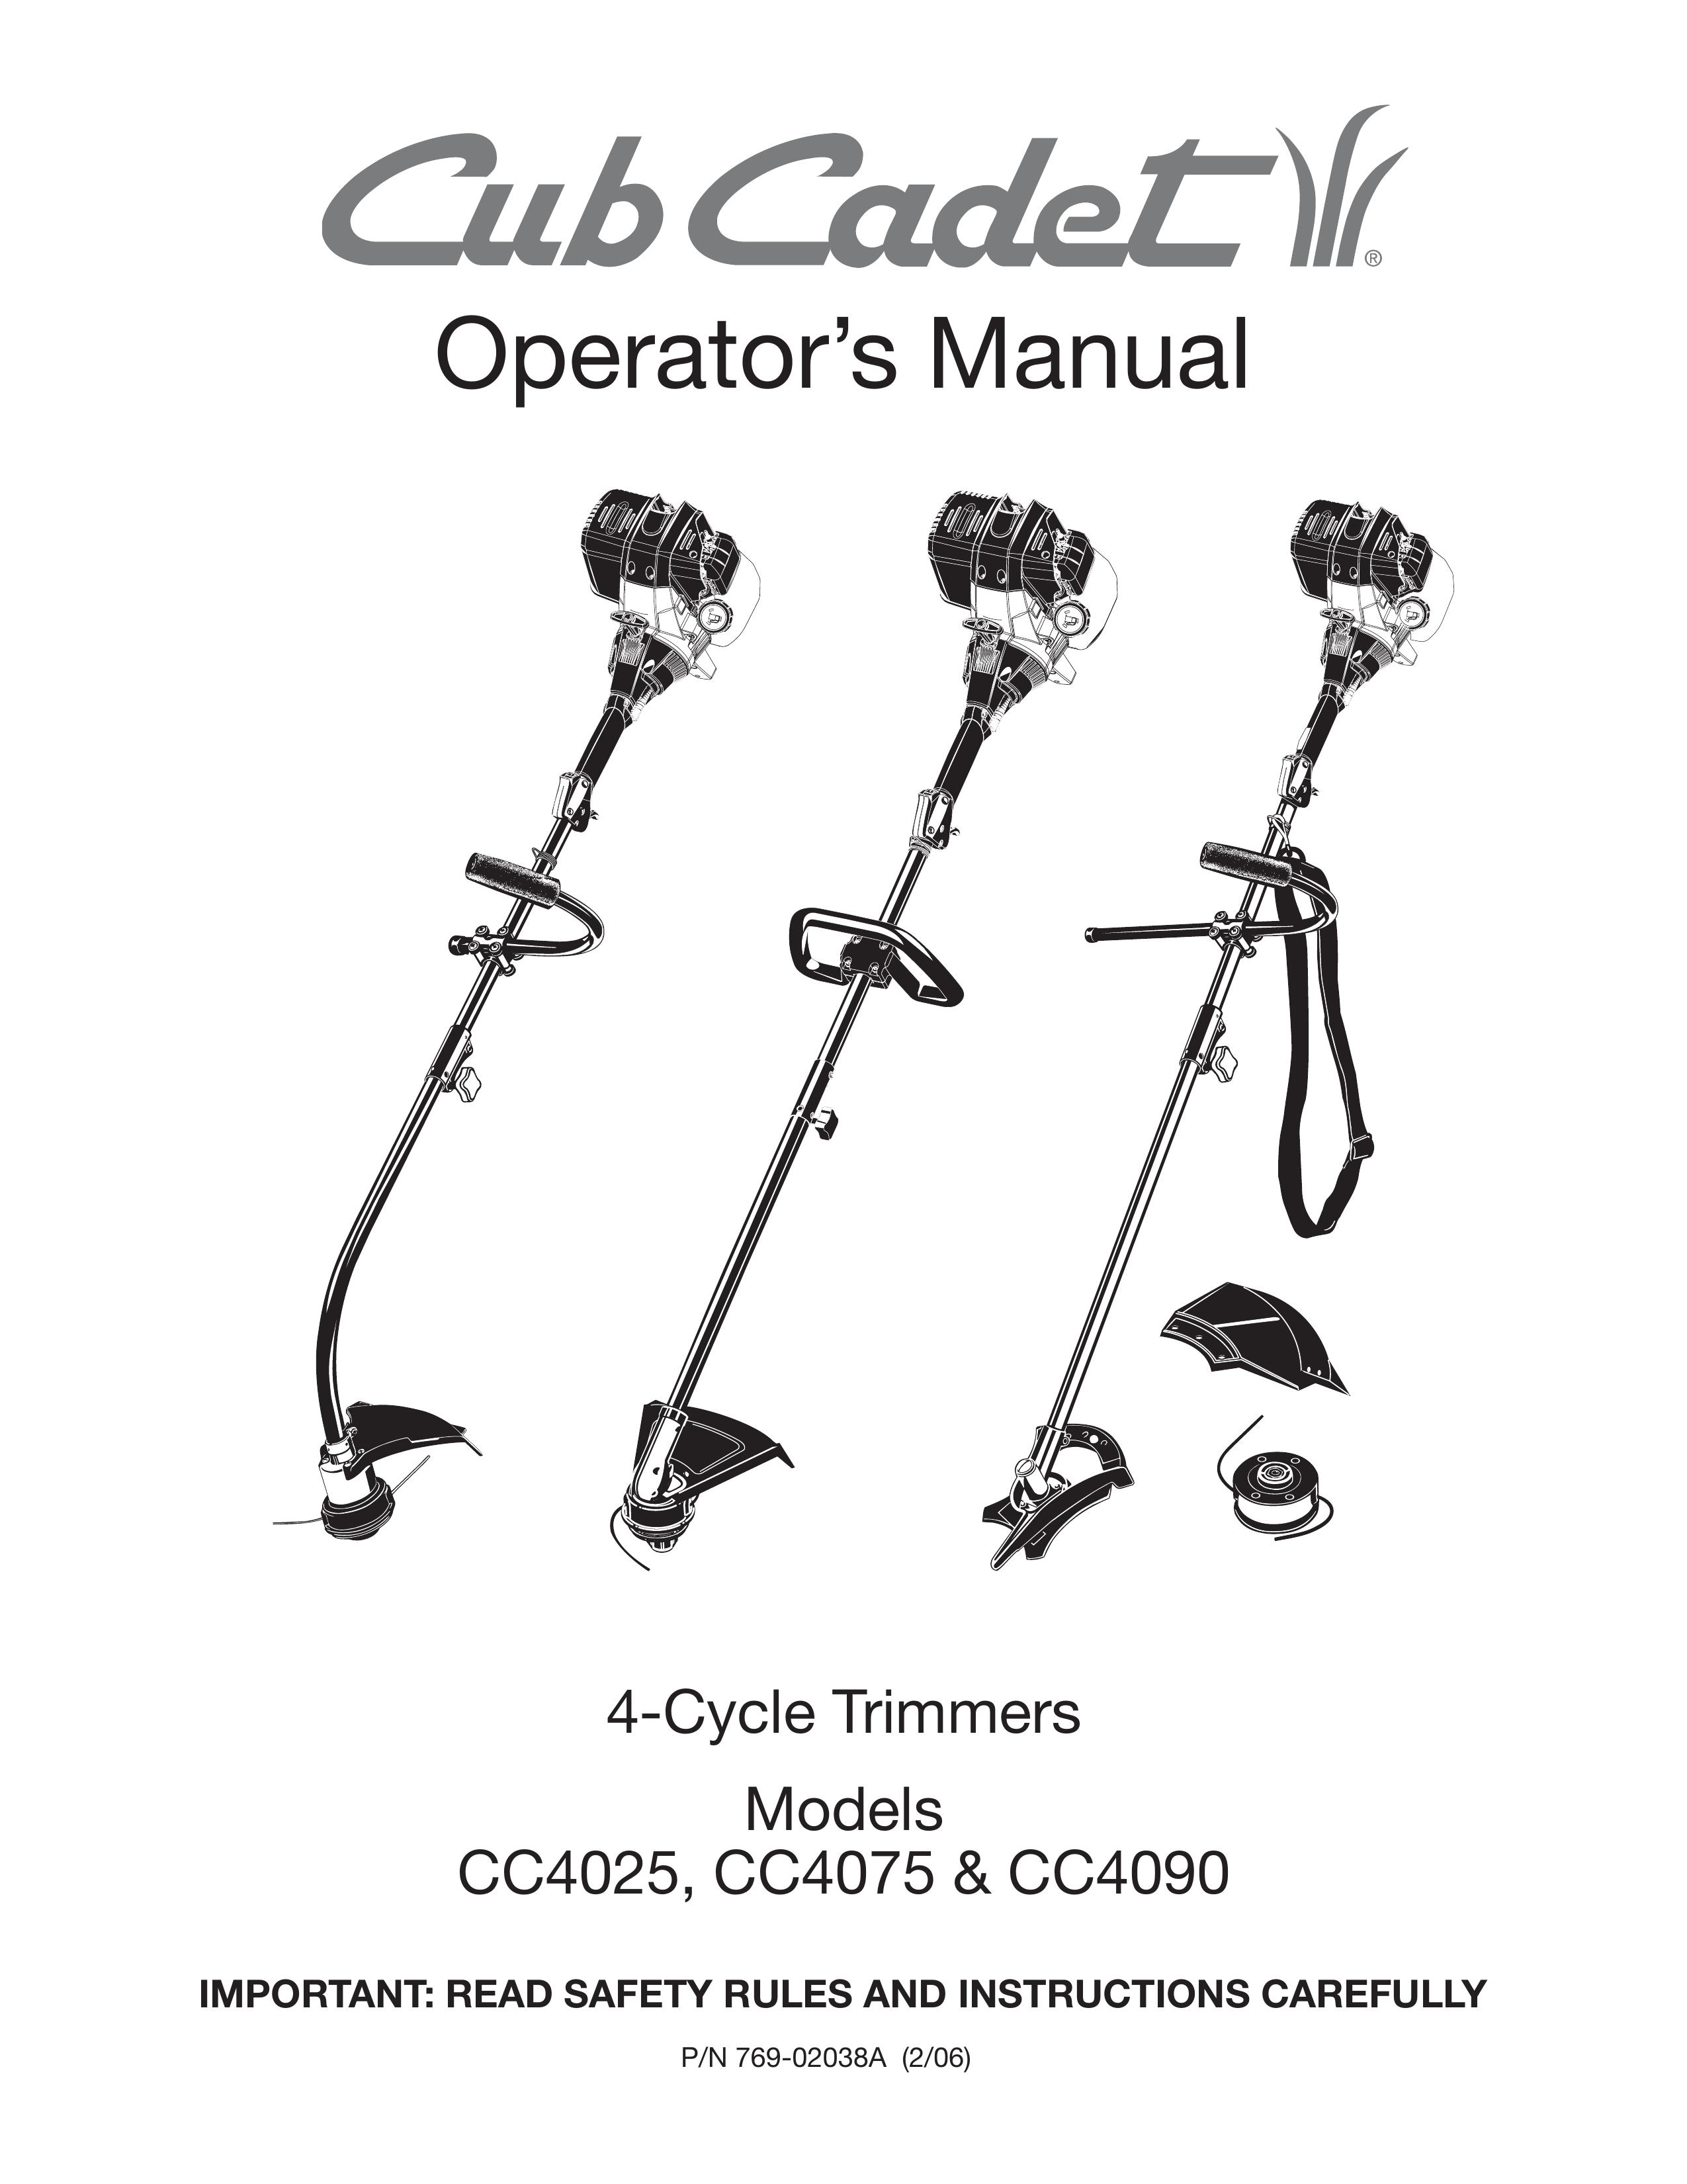 Cub Cadet CC4090 Trimmer User Manual